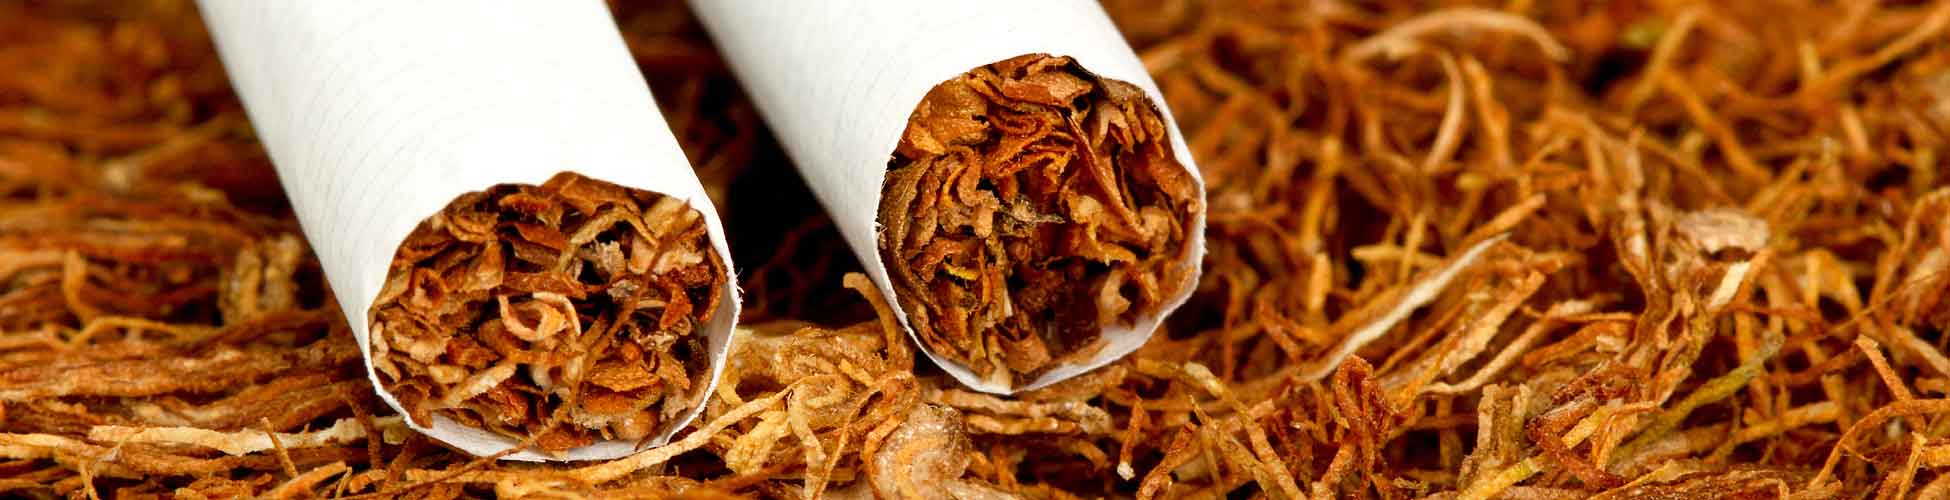 Zigaretten Tabak kaufen zum drehen & stopfen